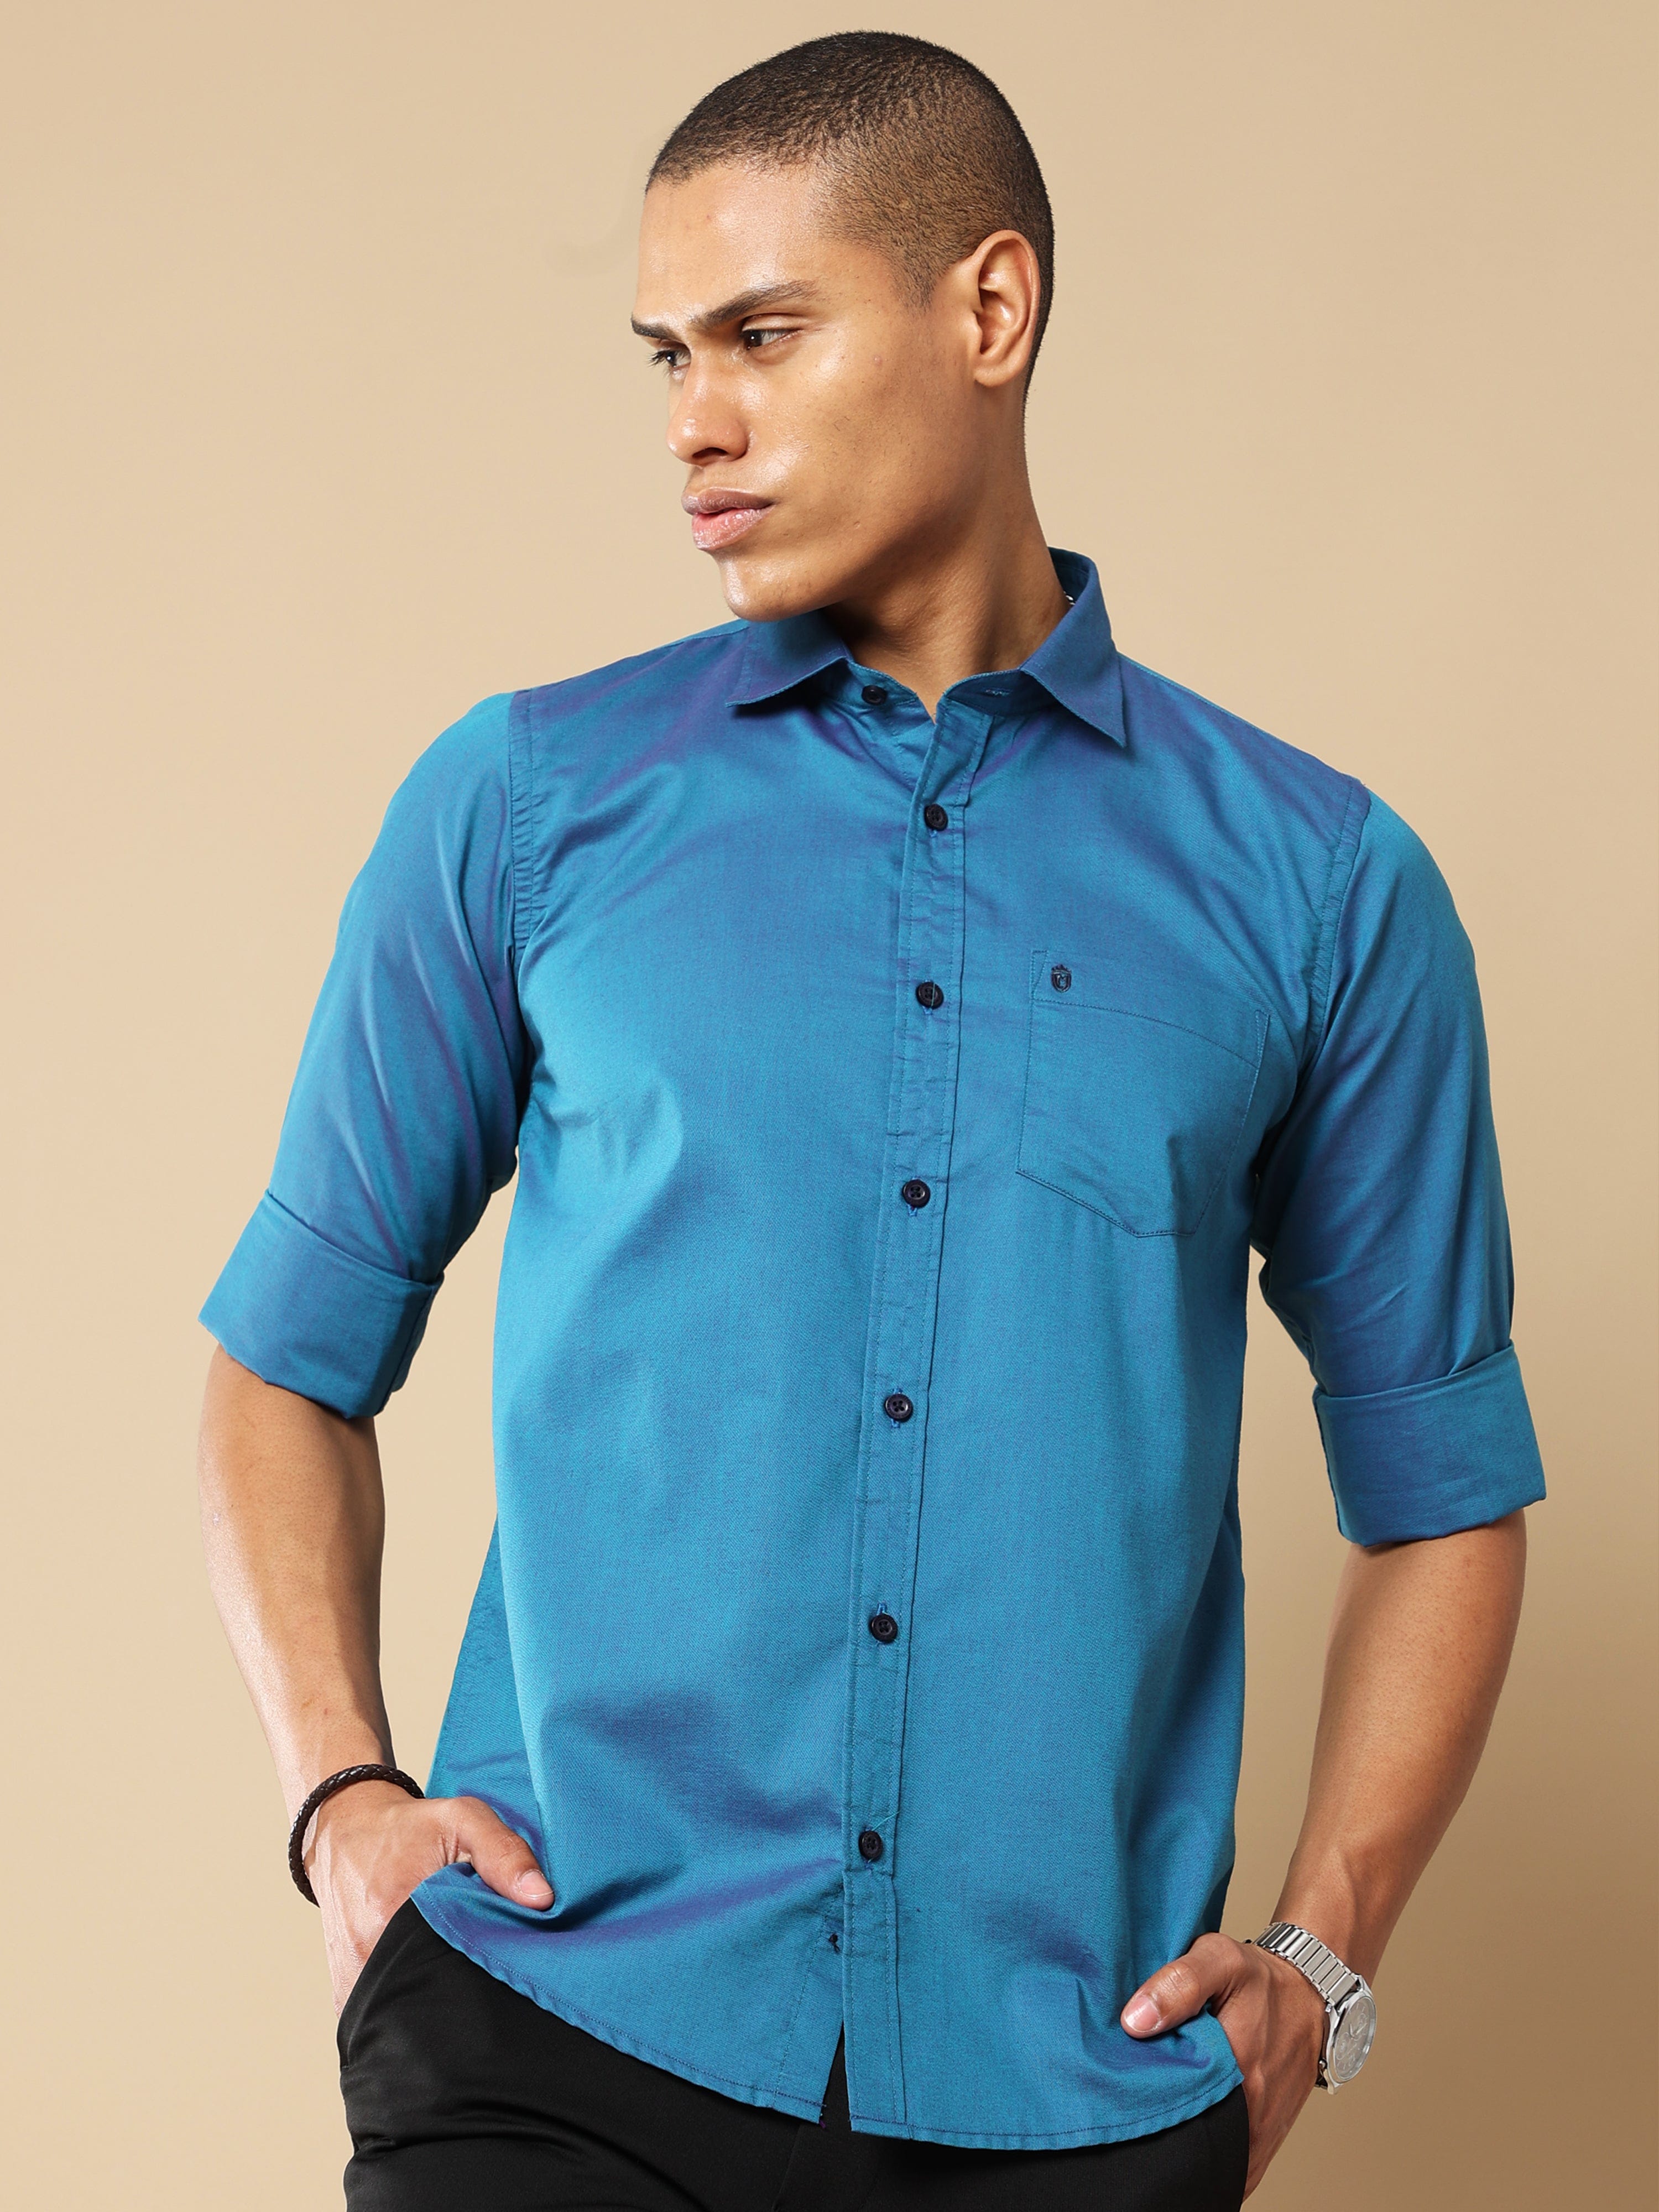 Sea Blue Oxford Shirt